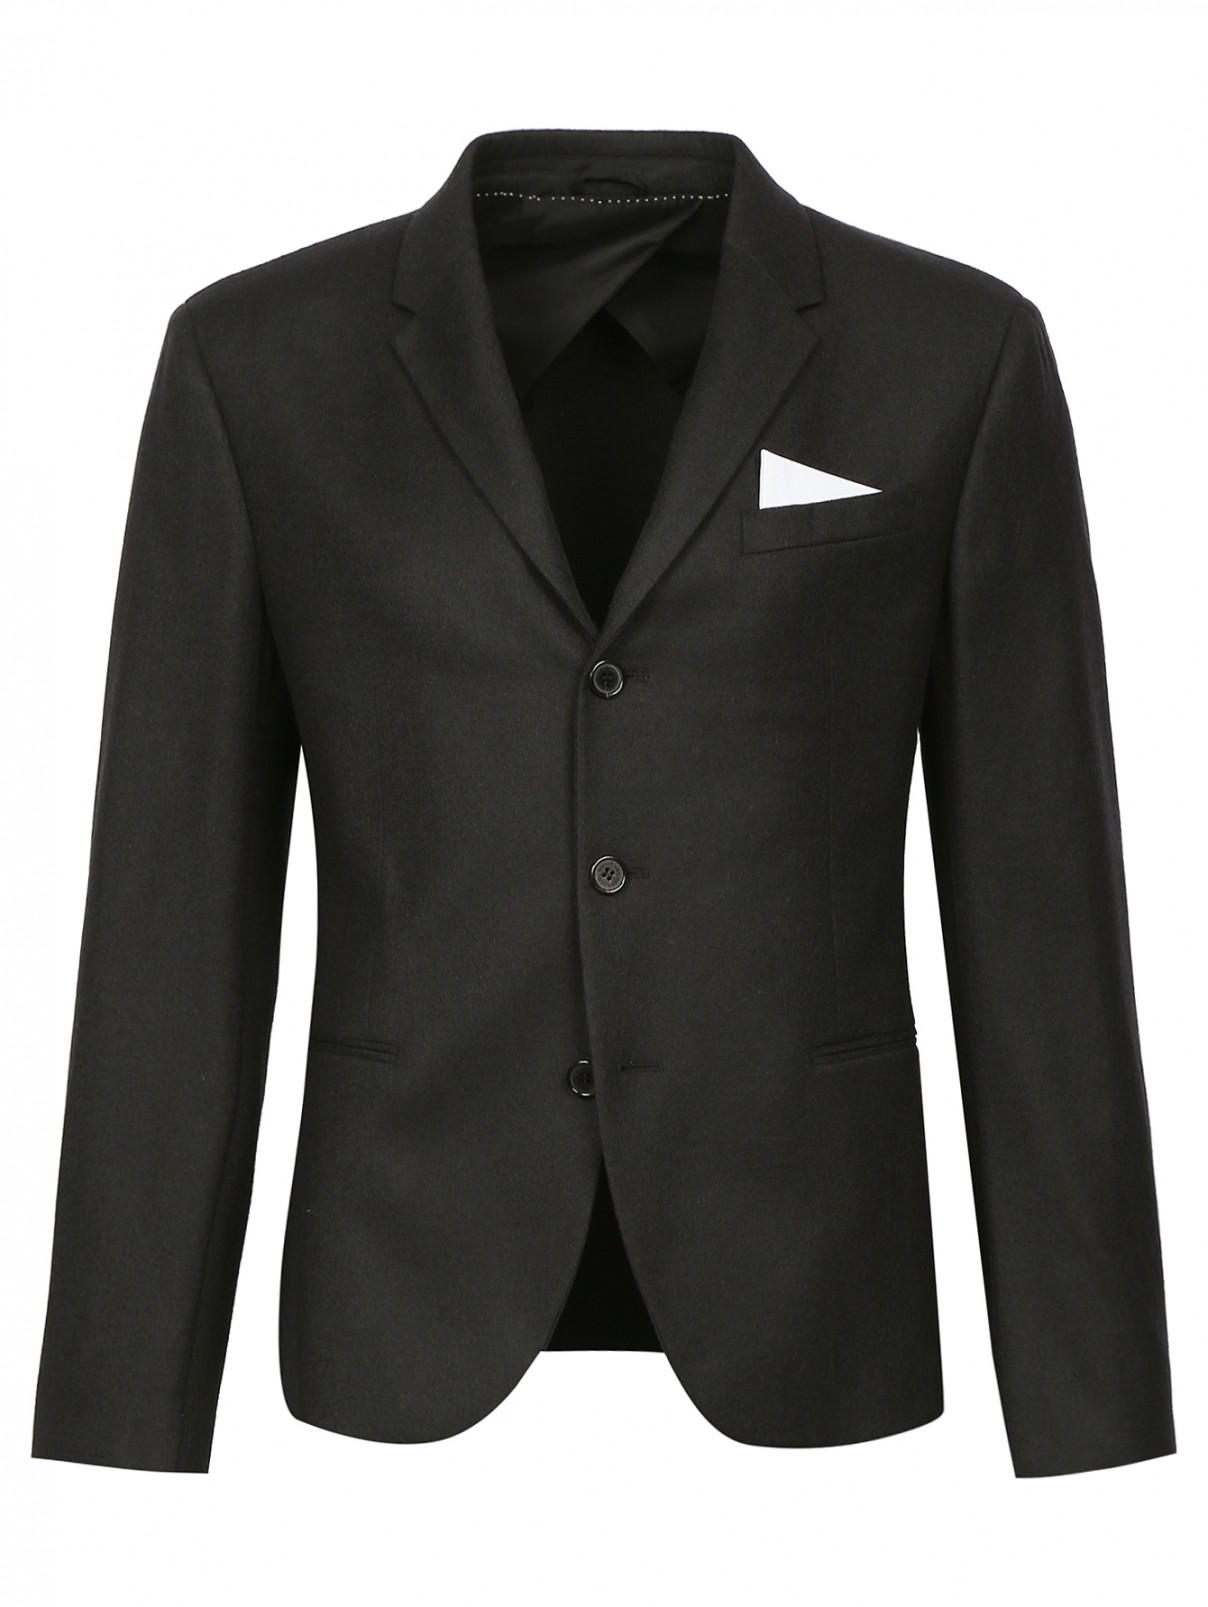 Однобортный пиджак из шерсти с трикотажной вставкой NEIL BARRETT  –  Общий вид  – Цвет:  Черный